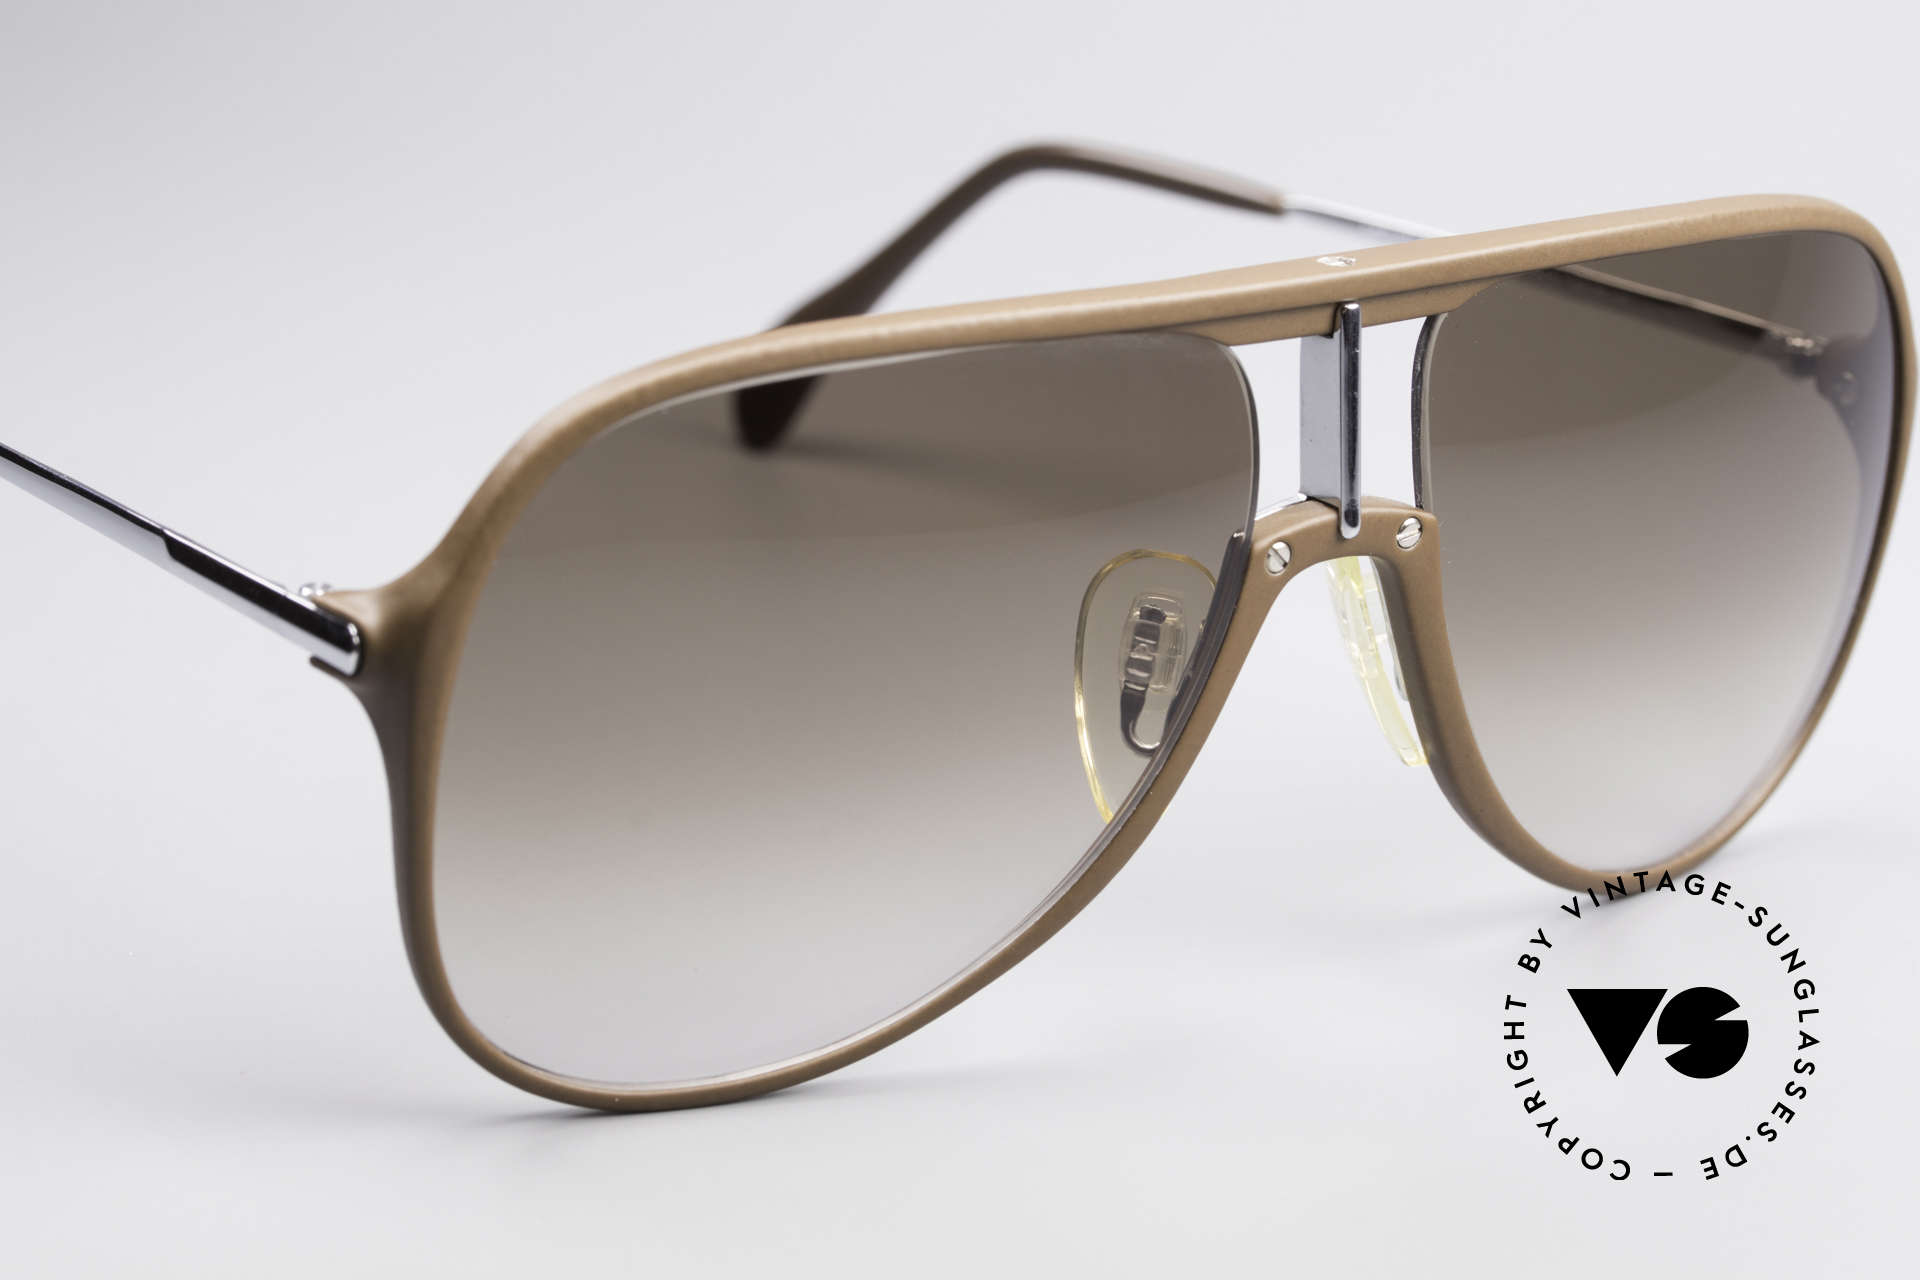 Menrad 727 80's Quality Sunglasses Men, NO RETRO, but a true vintage model from 1982!, Made for Men